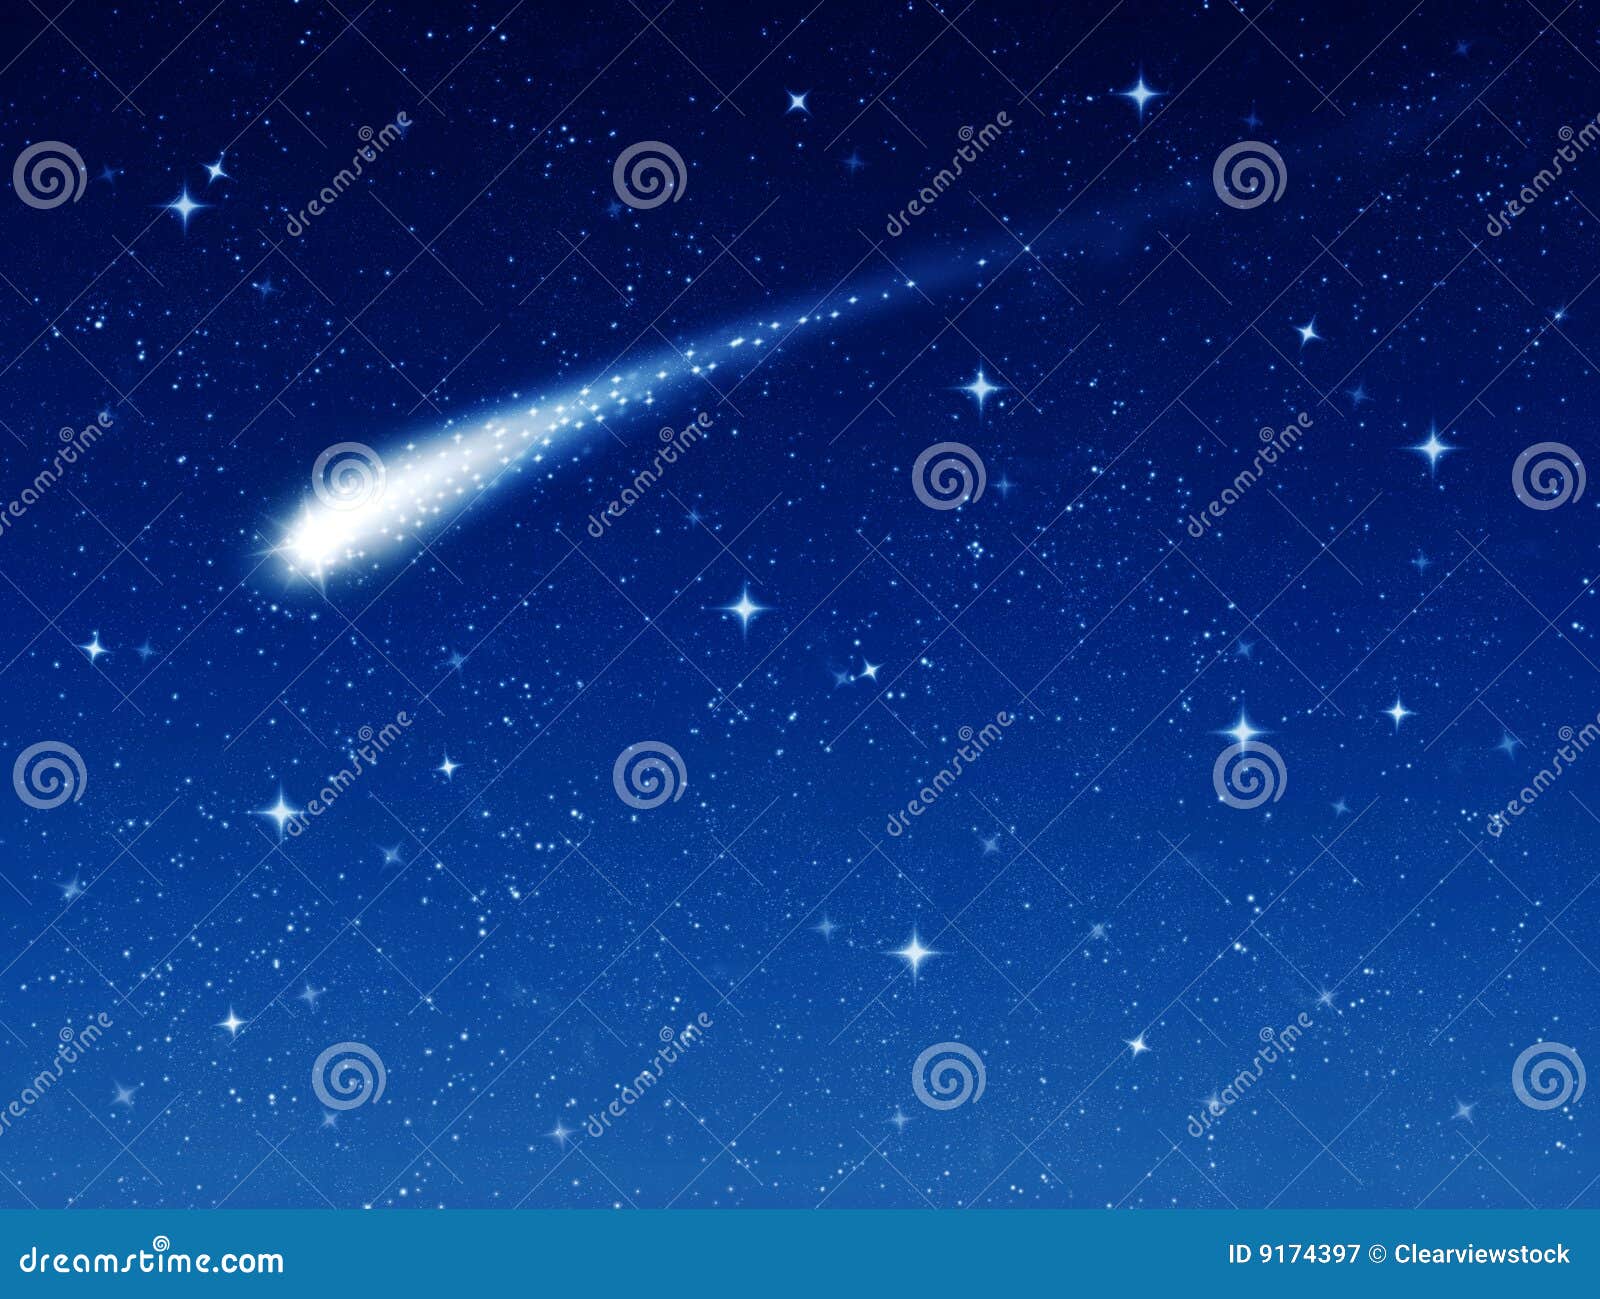 Wish Shooting Star Stock Illustrations – 809 Wish Shooting Star Stock  Illustrations, Vectors & Clipart - Dreamstime